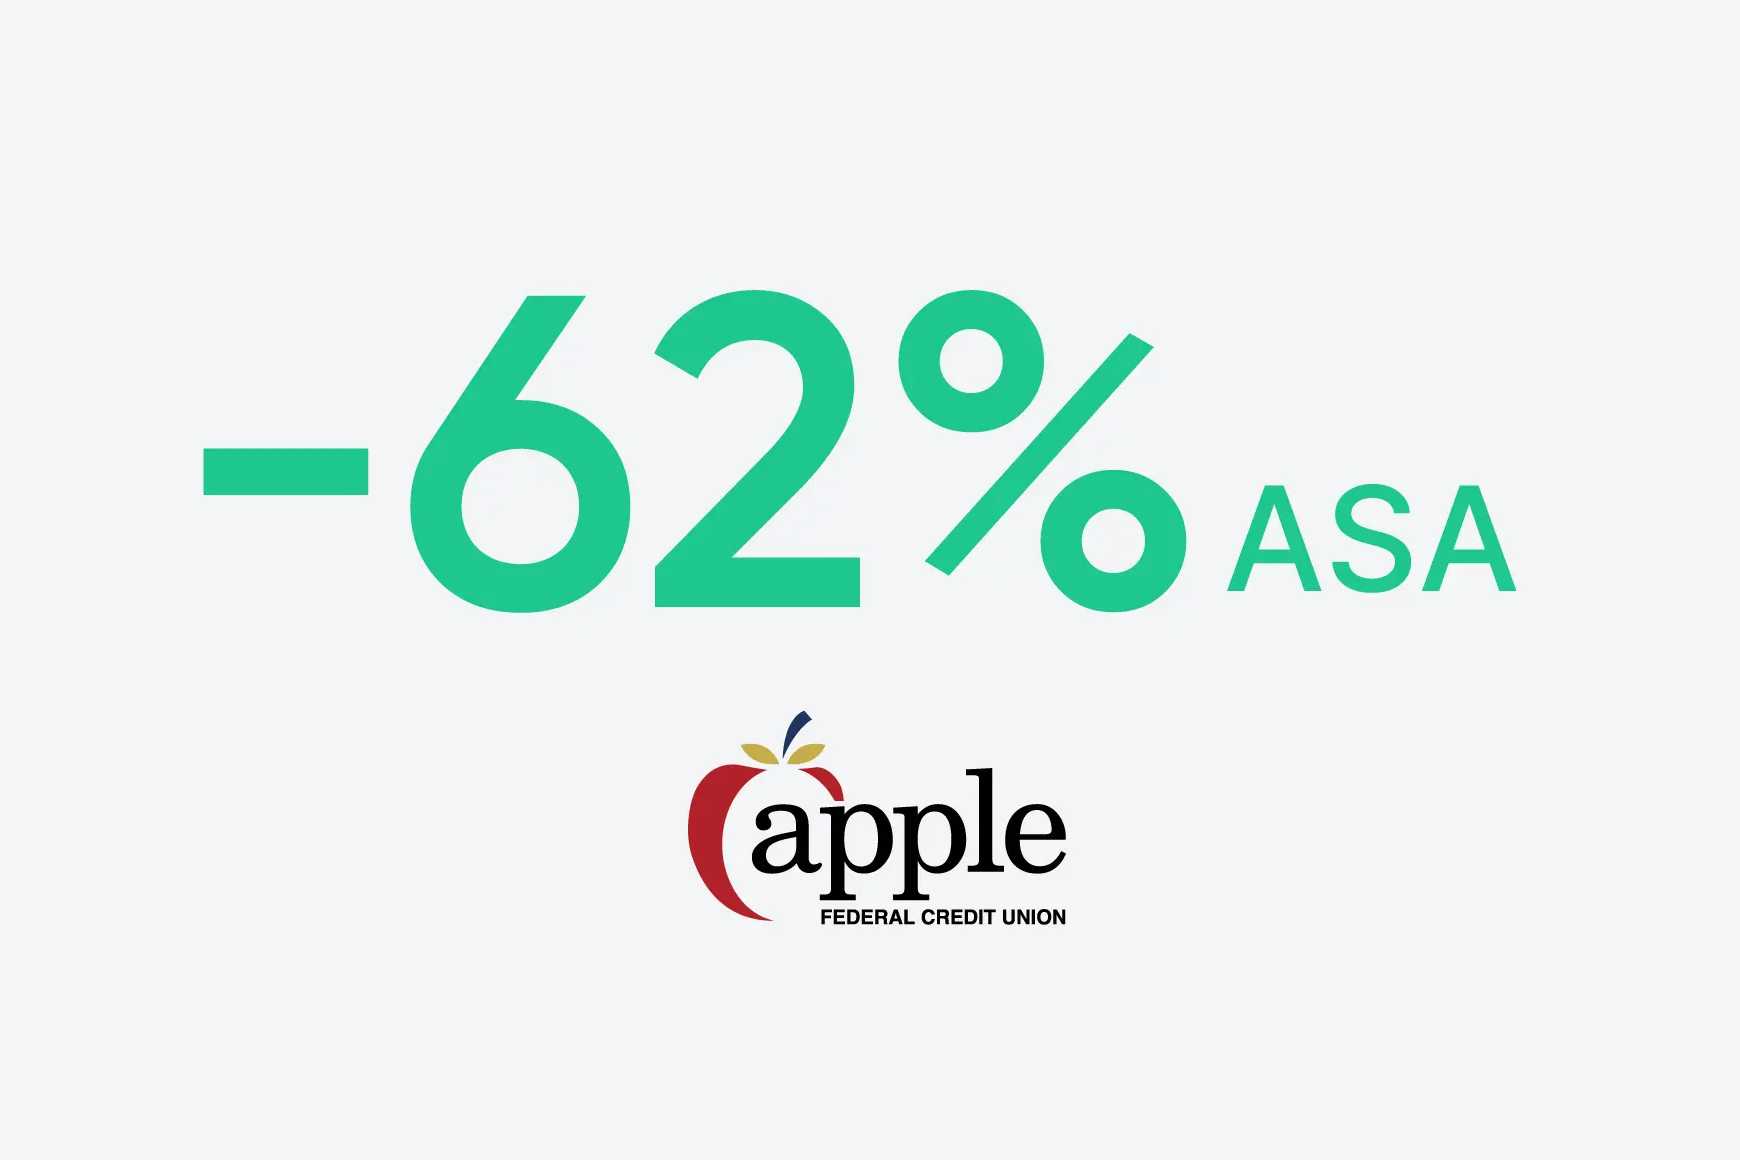 Apple Federal Credit Union hat die ASA um 62 % reduziert